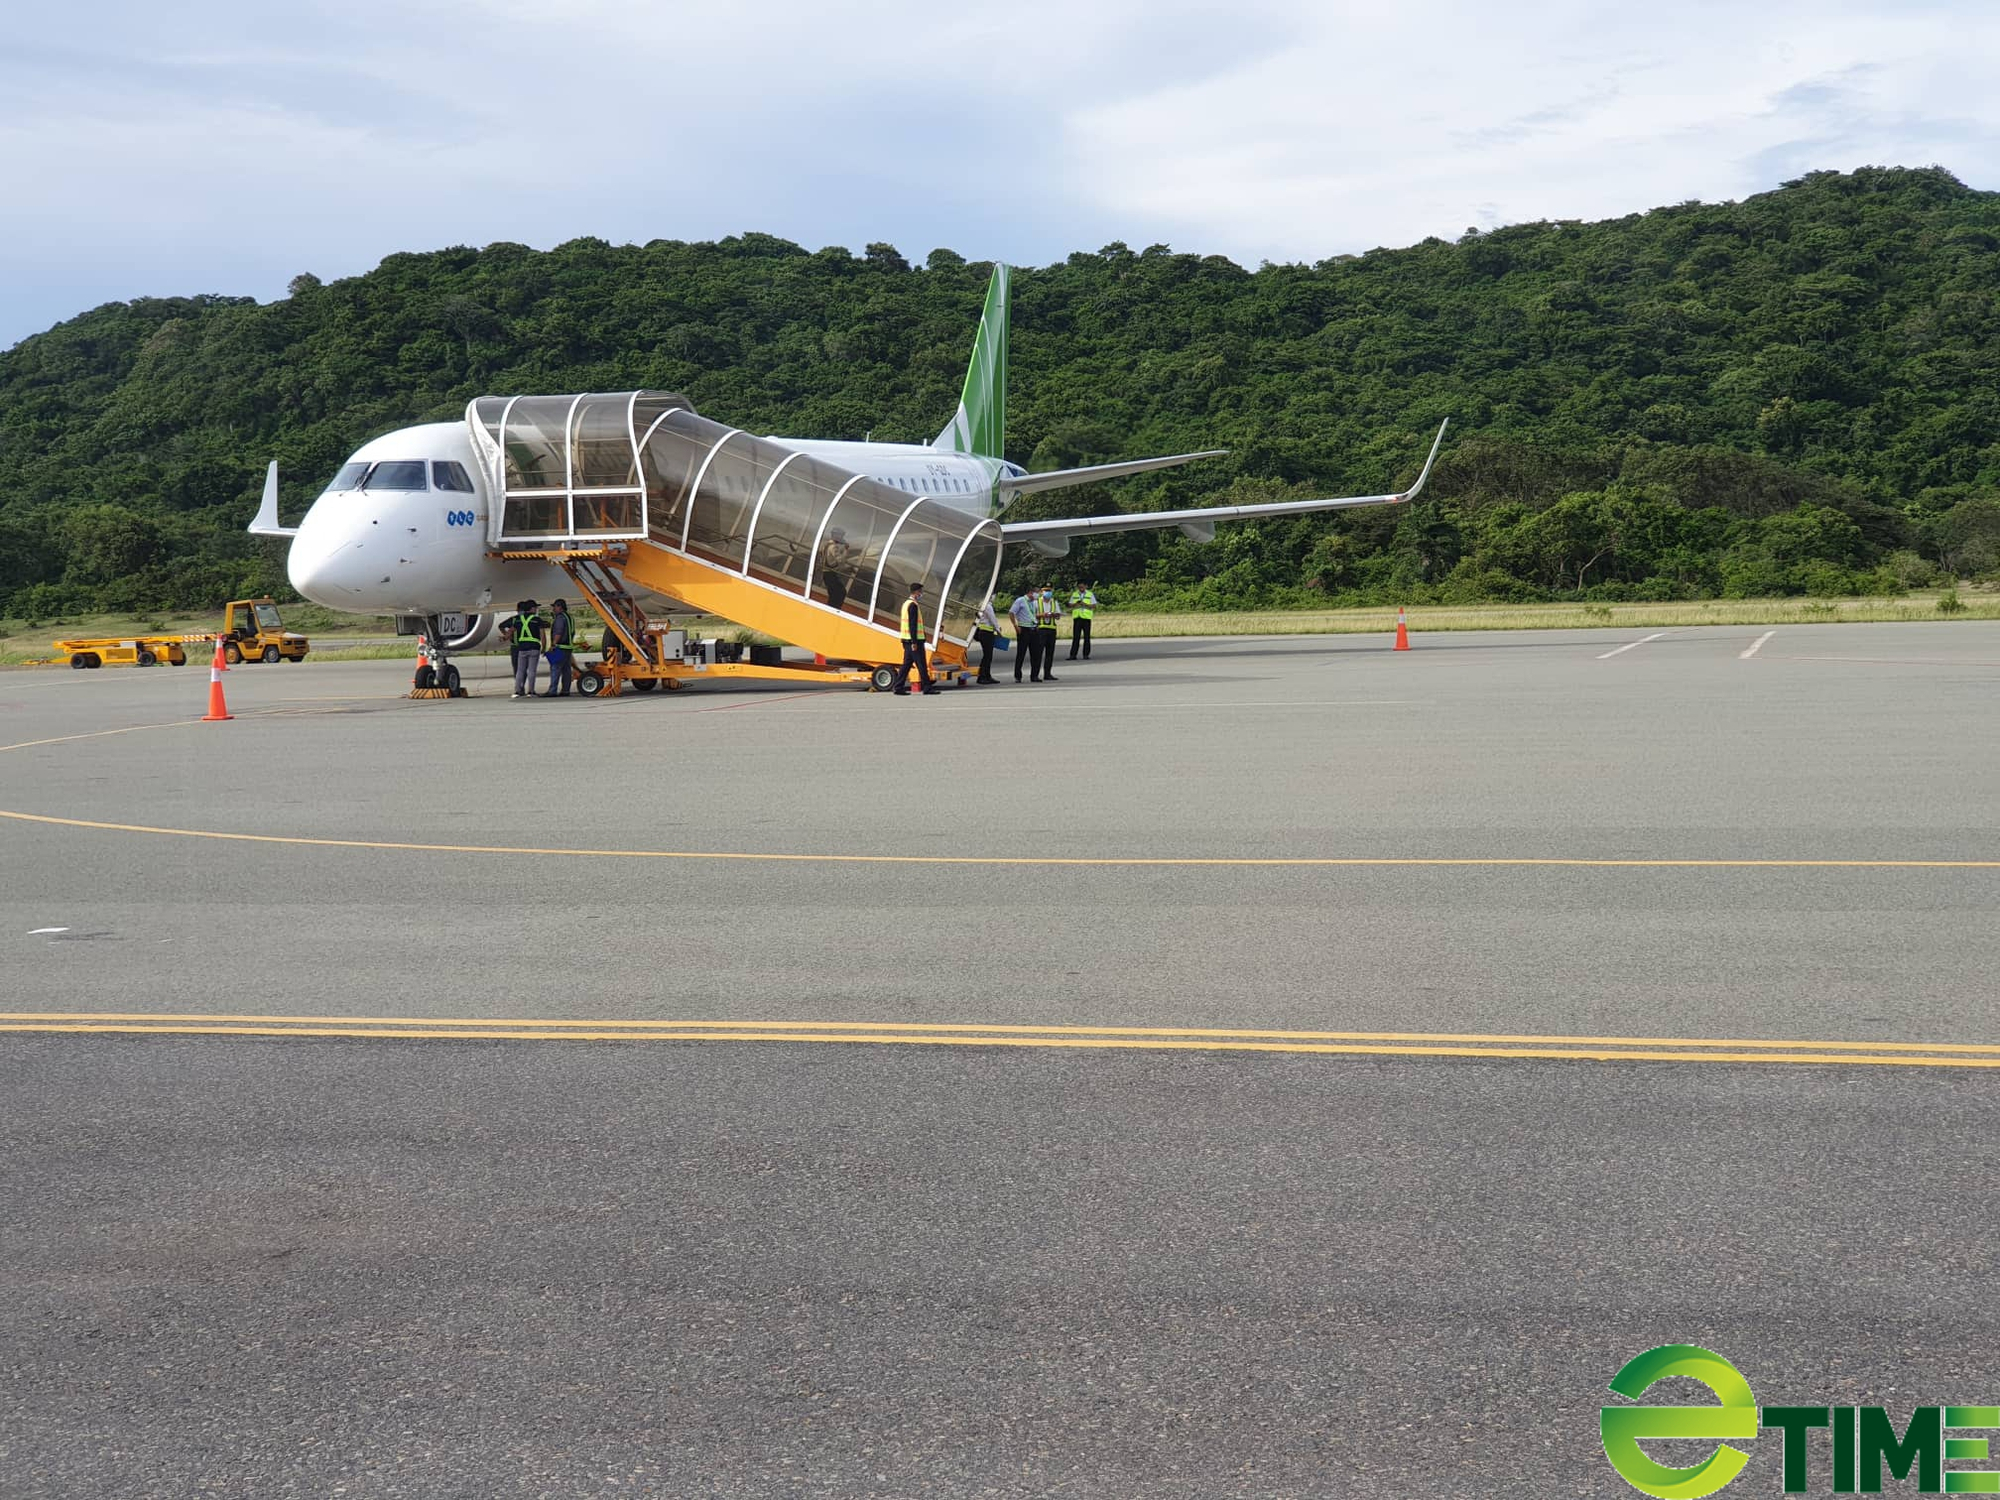 Sân bay Côn Đảo tạm đóng cửa, khai thác chuyến bay trực thăng phục vụ người dân - Ảnh 1.